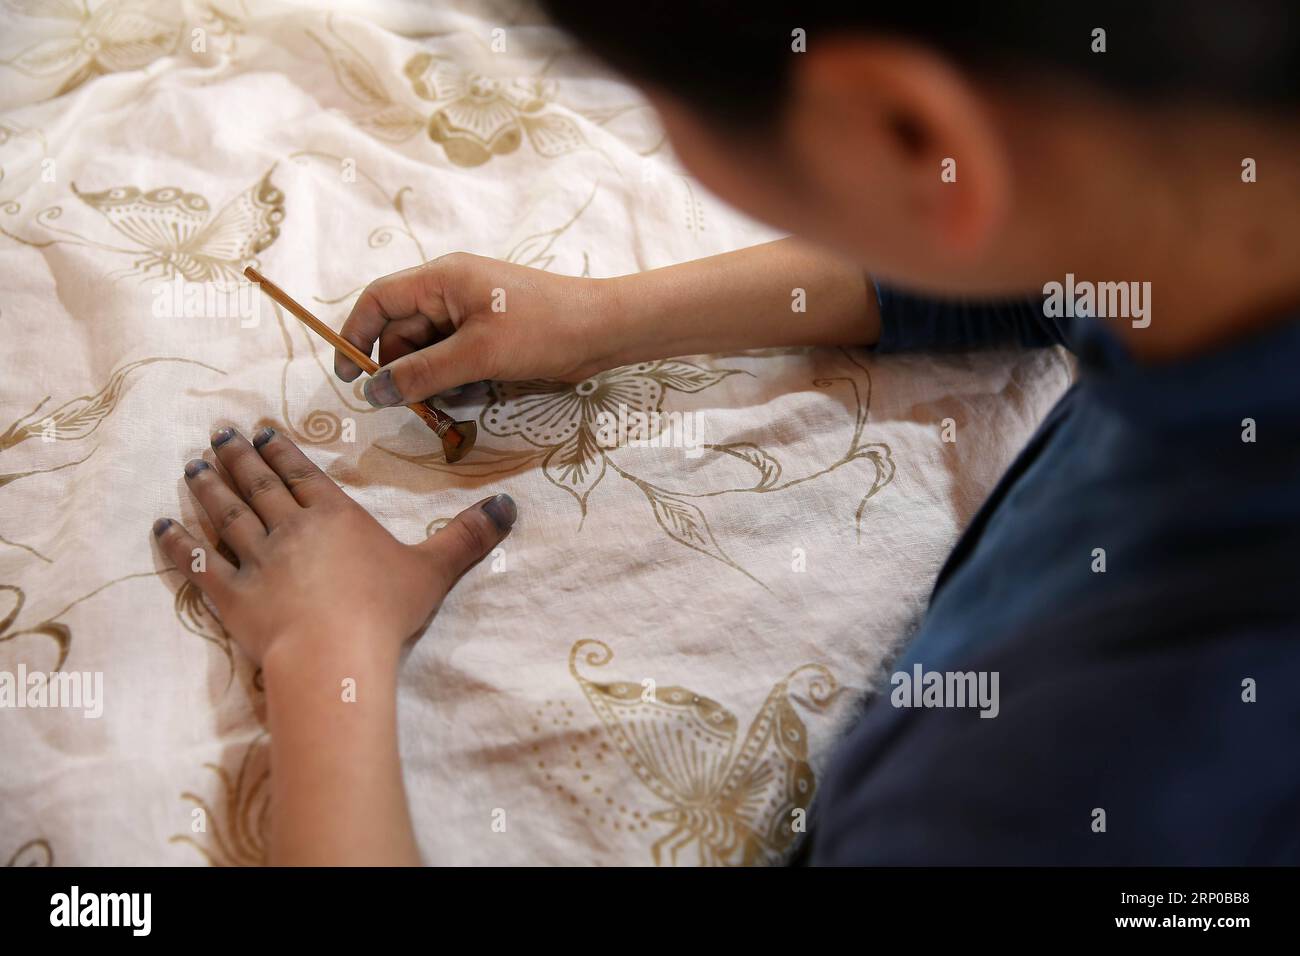 (180503) -- DANZHAI, 3 mai 2018 -- Zhang Yiping dessine un motif batik dans le comté de Danzhai, dans la province du Guizhou du sud-ouest de la Chine, le 2 mai 2018. Obsédée par la culture batik depuis un enfant, Zhang Yiping, une jeune femme née en 1993, a démarré sa propre entreprise de créations batik dans sa ville natale de Danzhai en 2014. Grâce à plusieurs années de développement, Zhang a mis en place son magasin de batik et aussi une base de production artisanale où plus de 100 femmes locales ont été employées. (Sxk) (zt) CHINA-GUIZHOU-DANZHAI-ENTREPRENEUR STORY (CN) HuangxXiaohai PUBLICATIONxNOTxINxCHN Banque D'Images